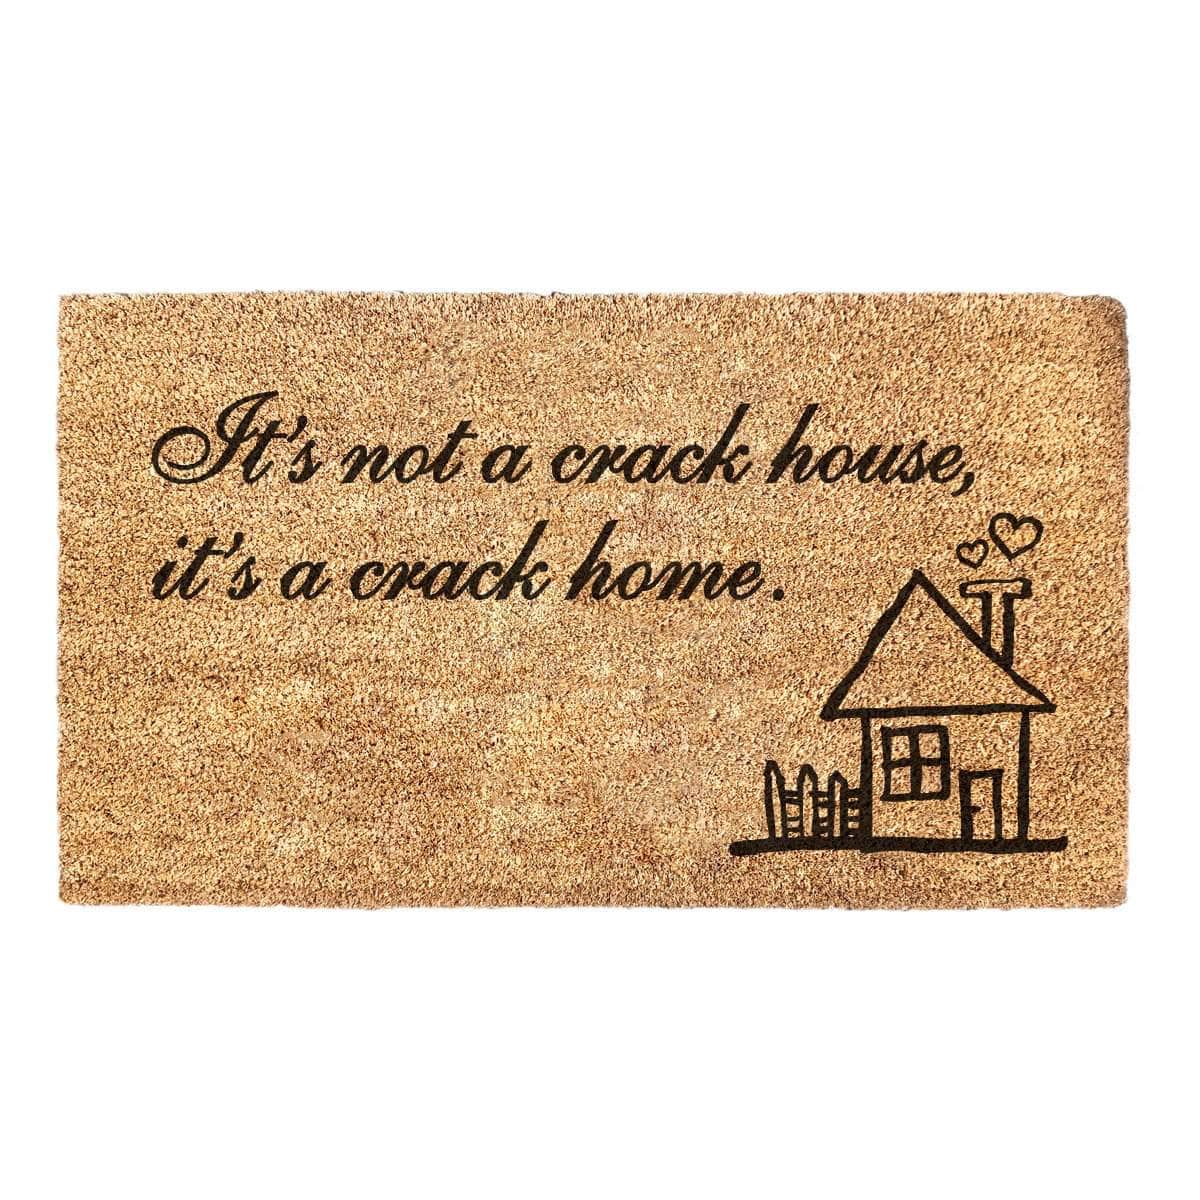 Crack House, Crack Home - Doormat